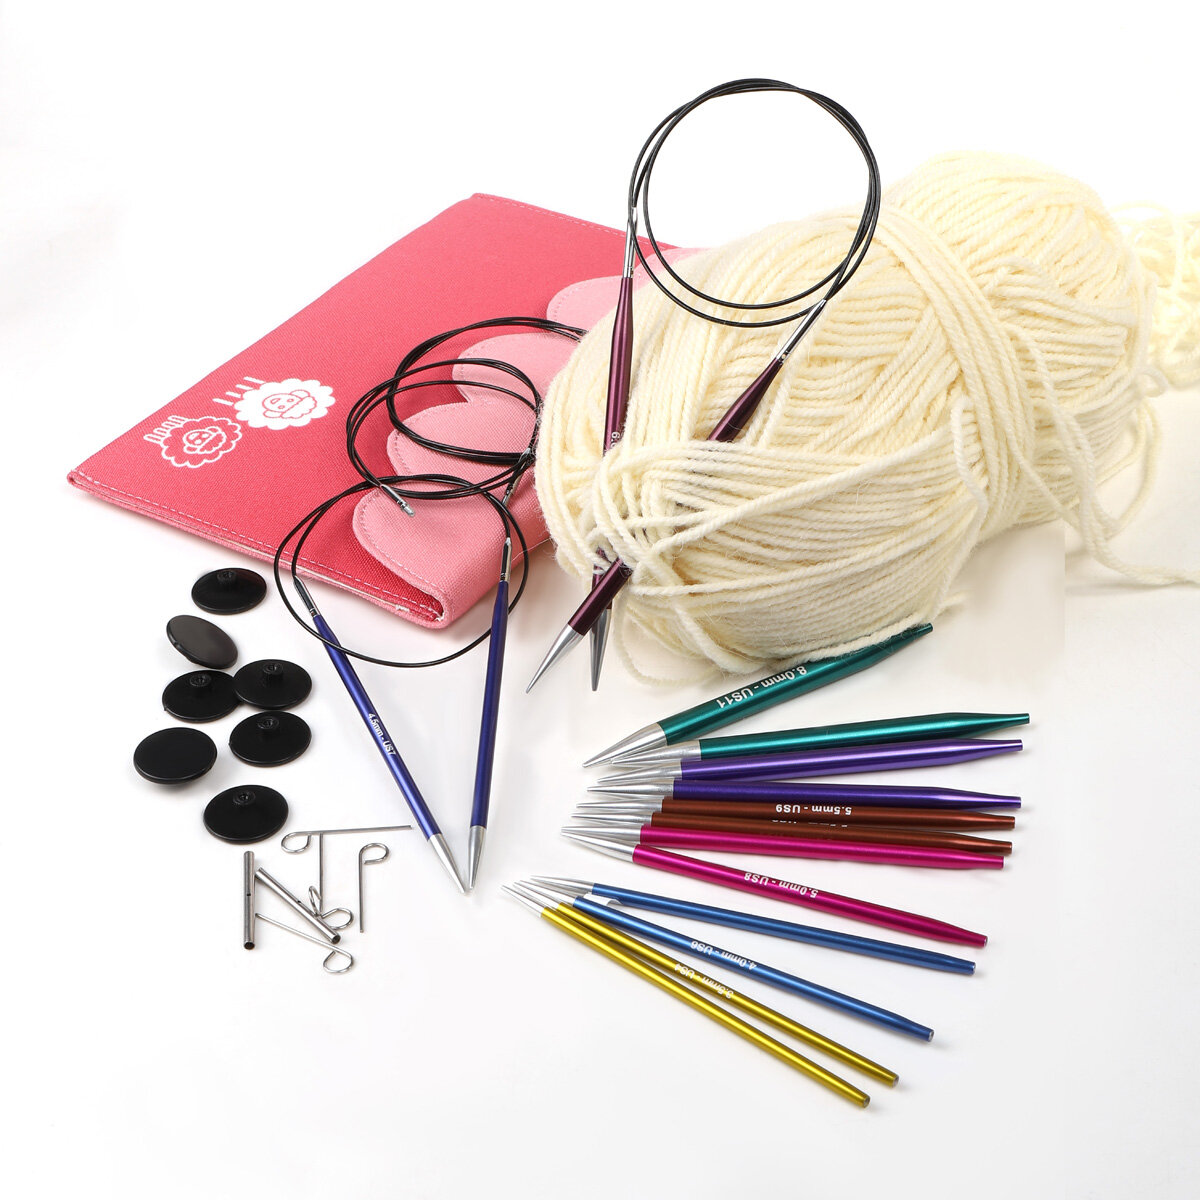 47424 Knit Pro Набор съемных спиц для вязания Deluxe, алюминий, 8 видов спиц (новый дизайн арт.47404)